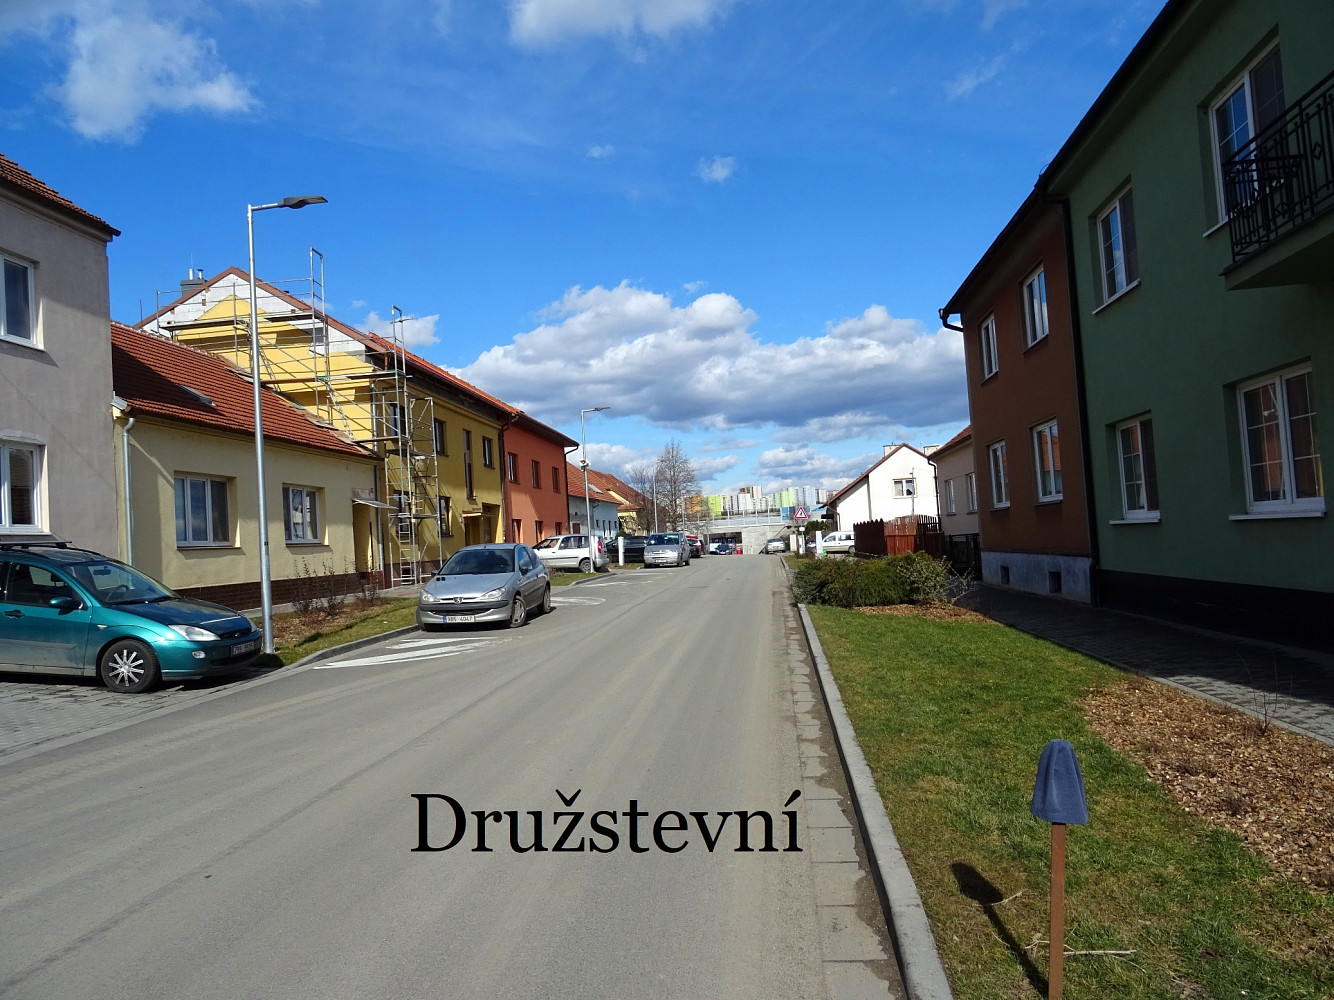 Družstevní, Ostopovice, okres Brno-venkov